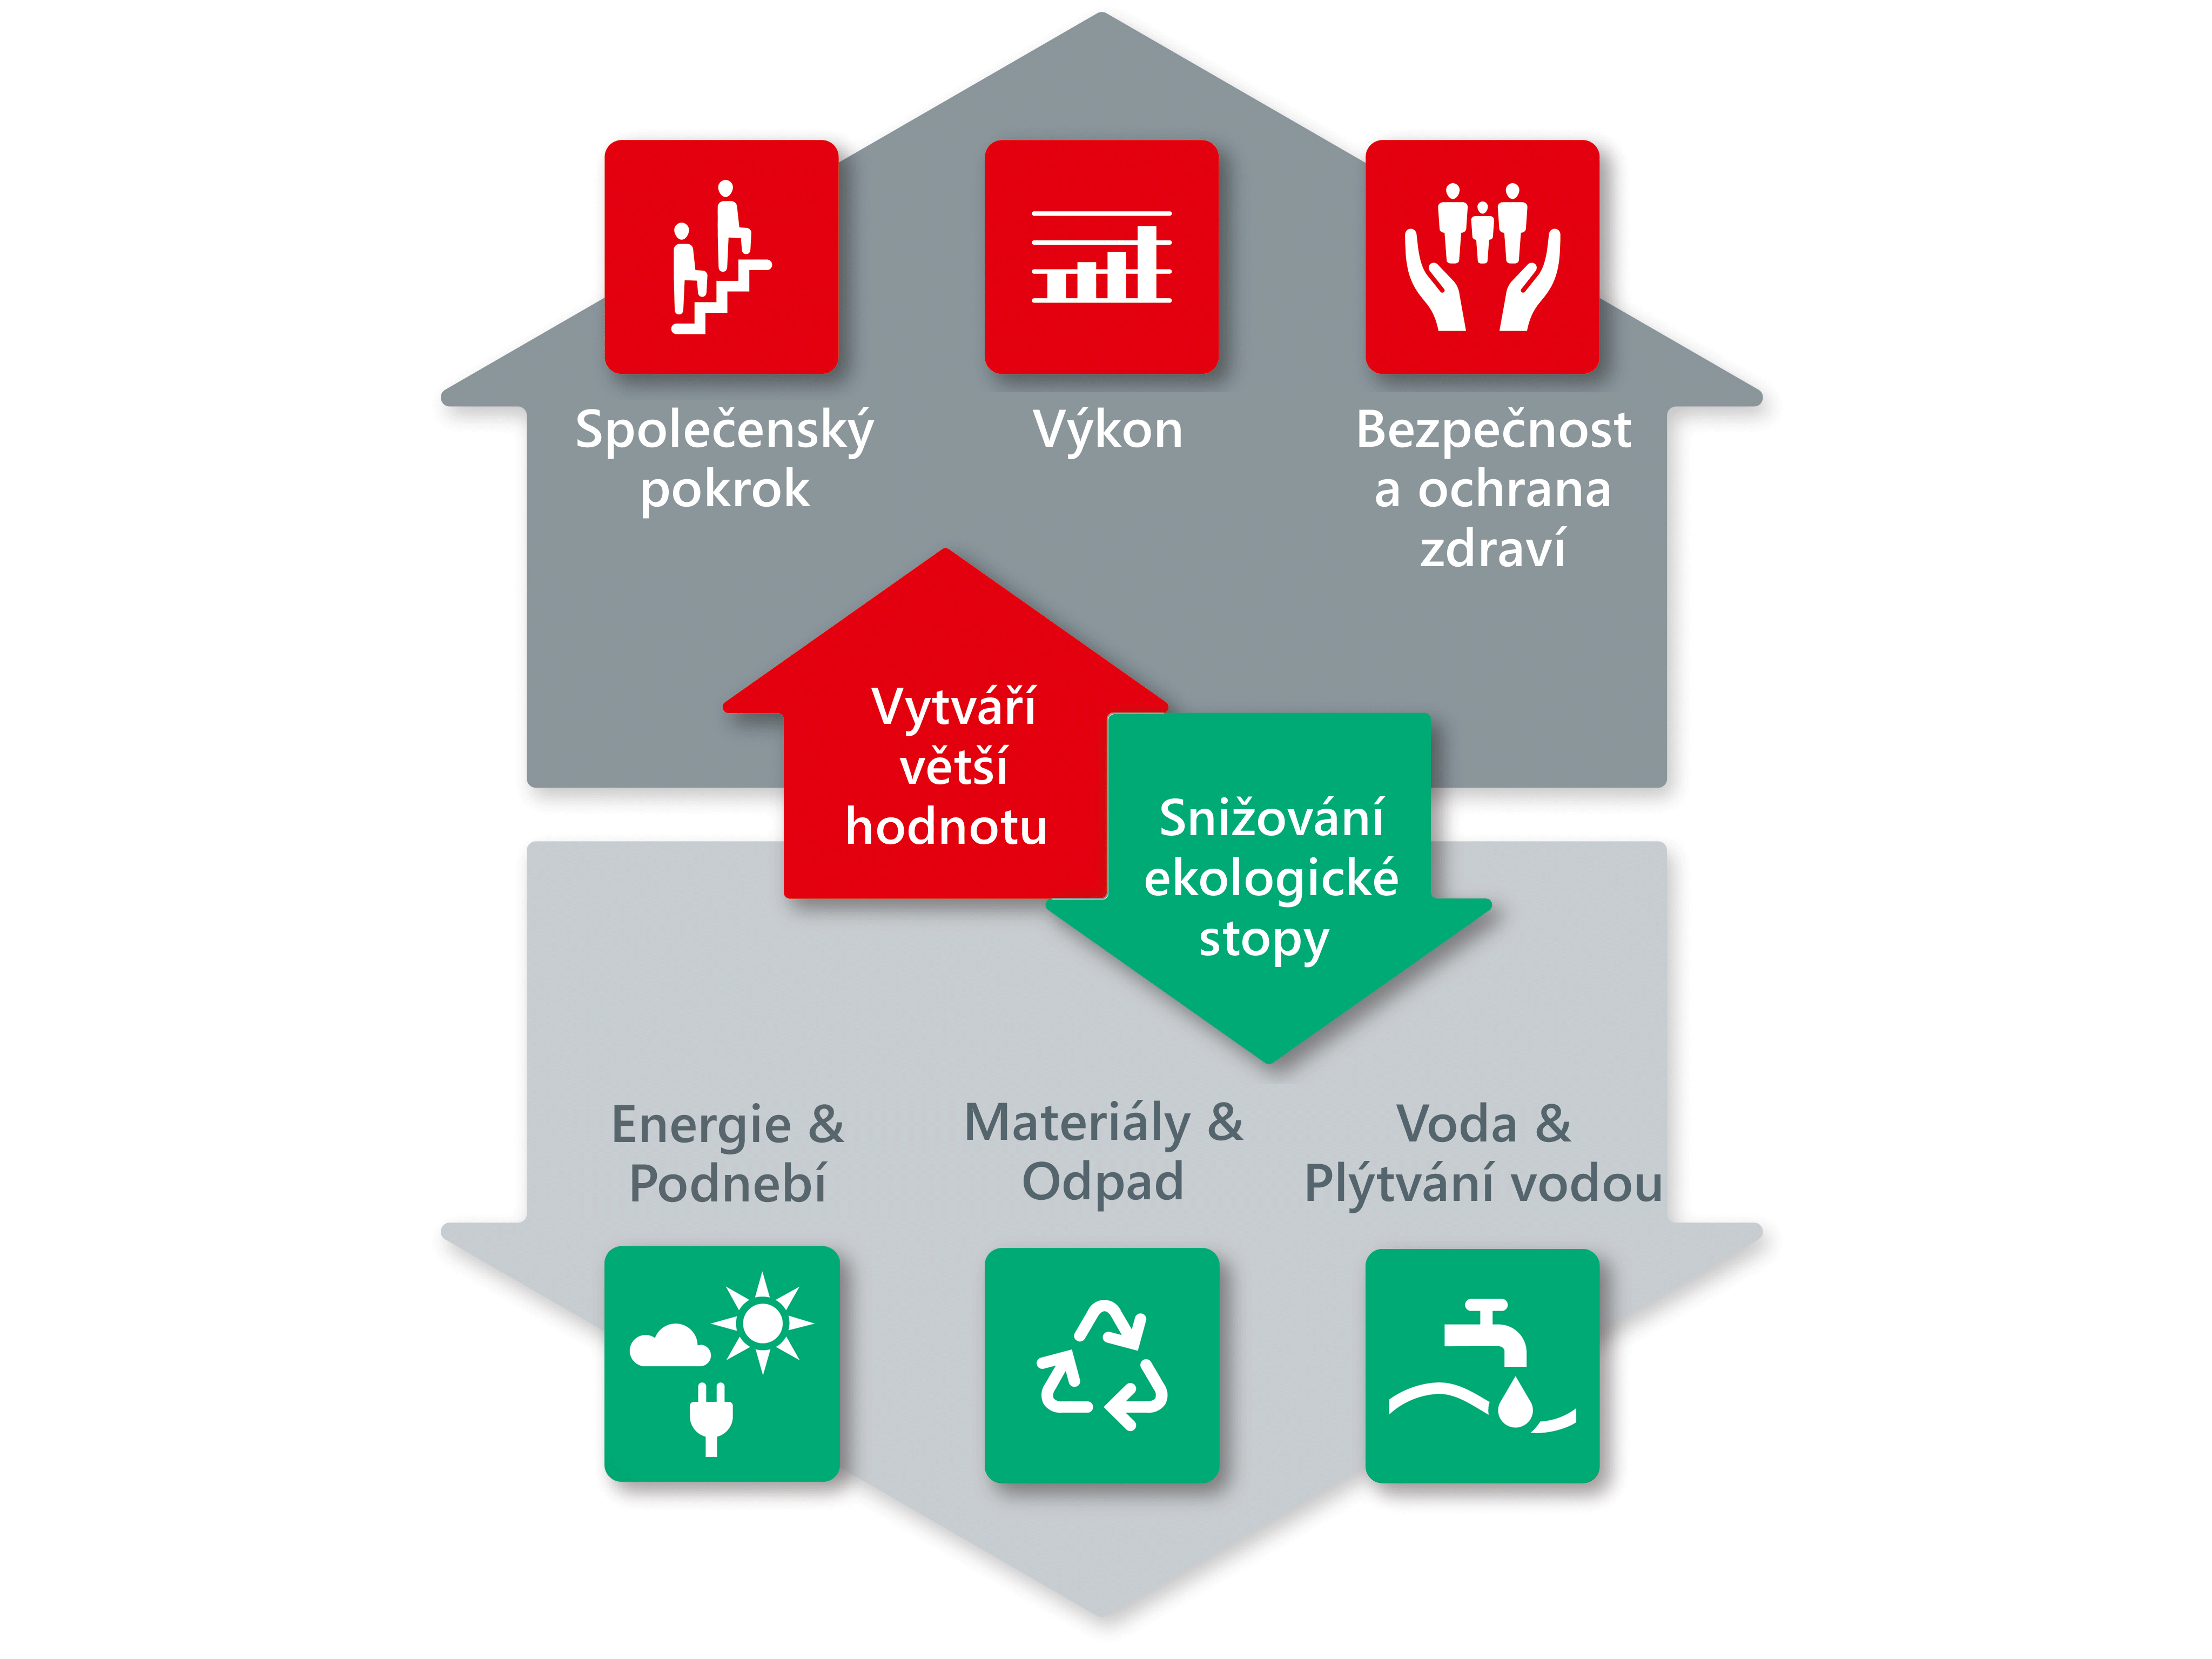 Trvalá udržitelnost ve společnosti Henkel: šest prioritních oblastí